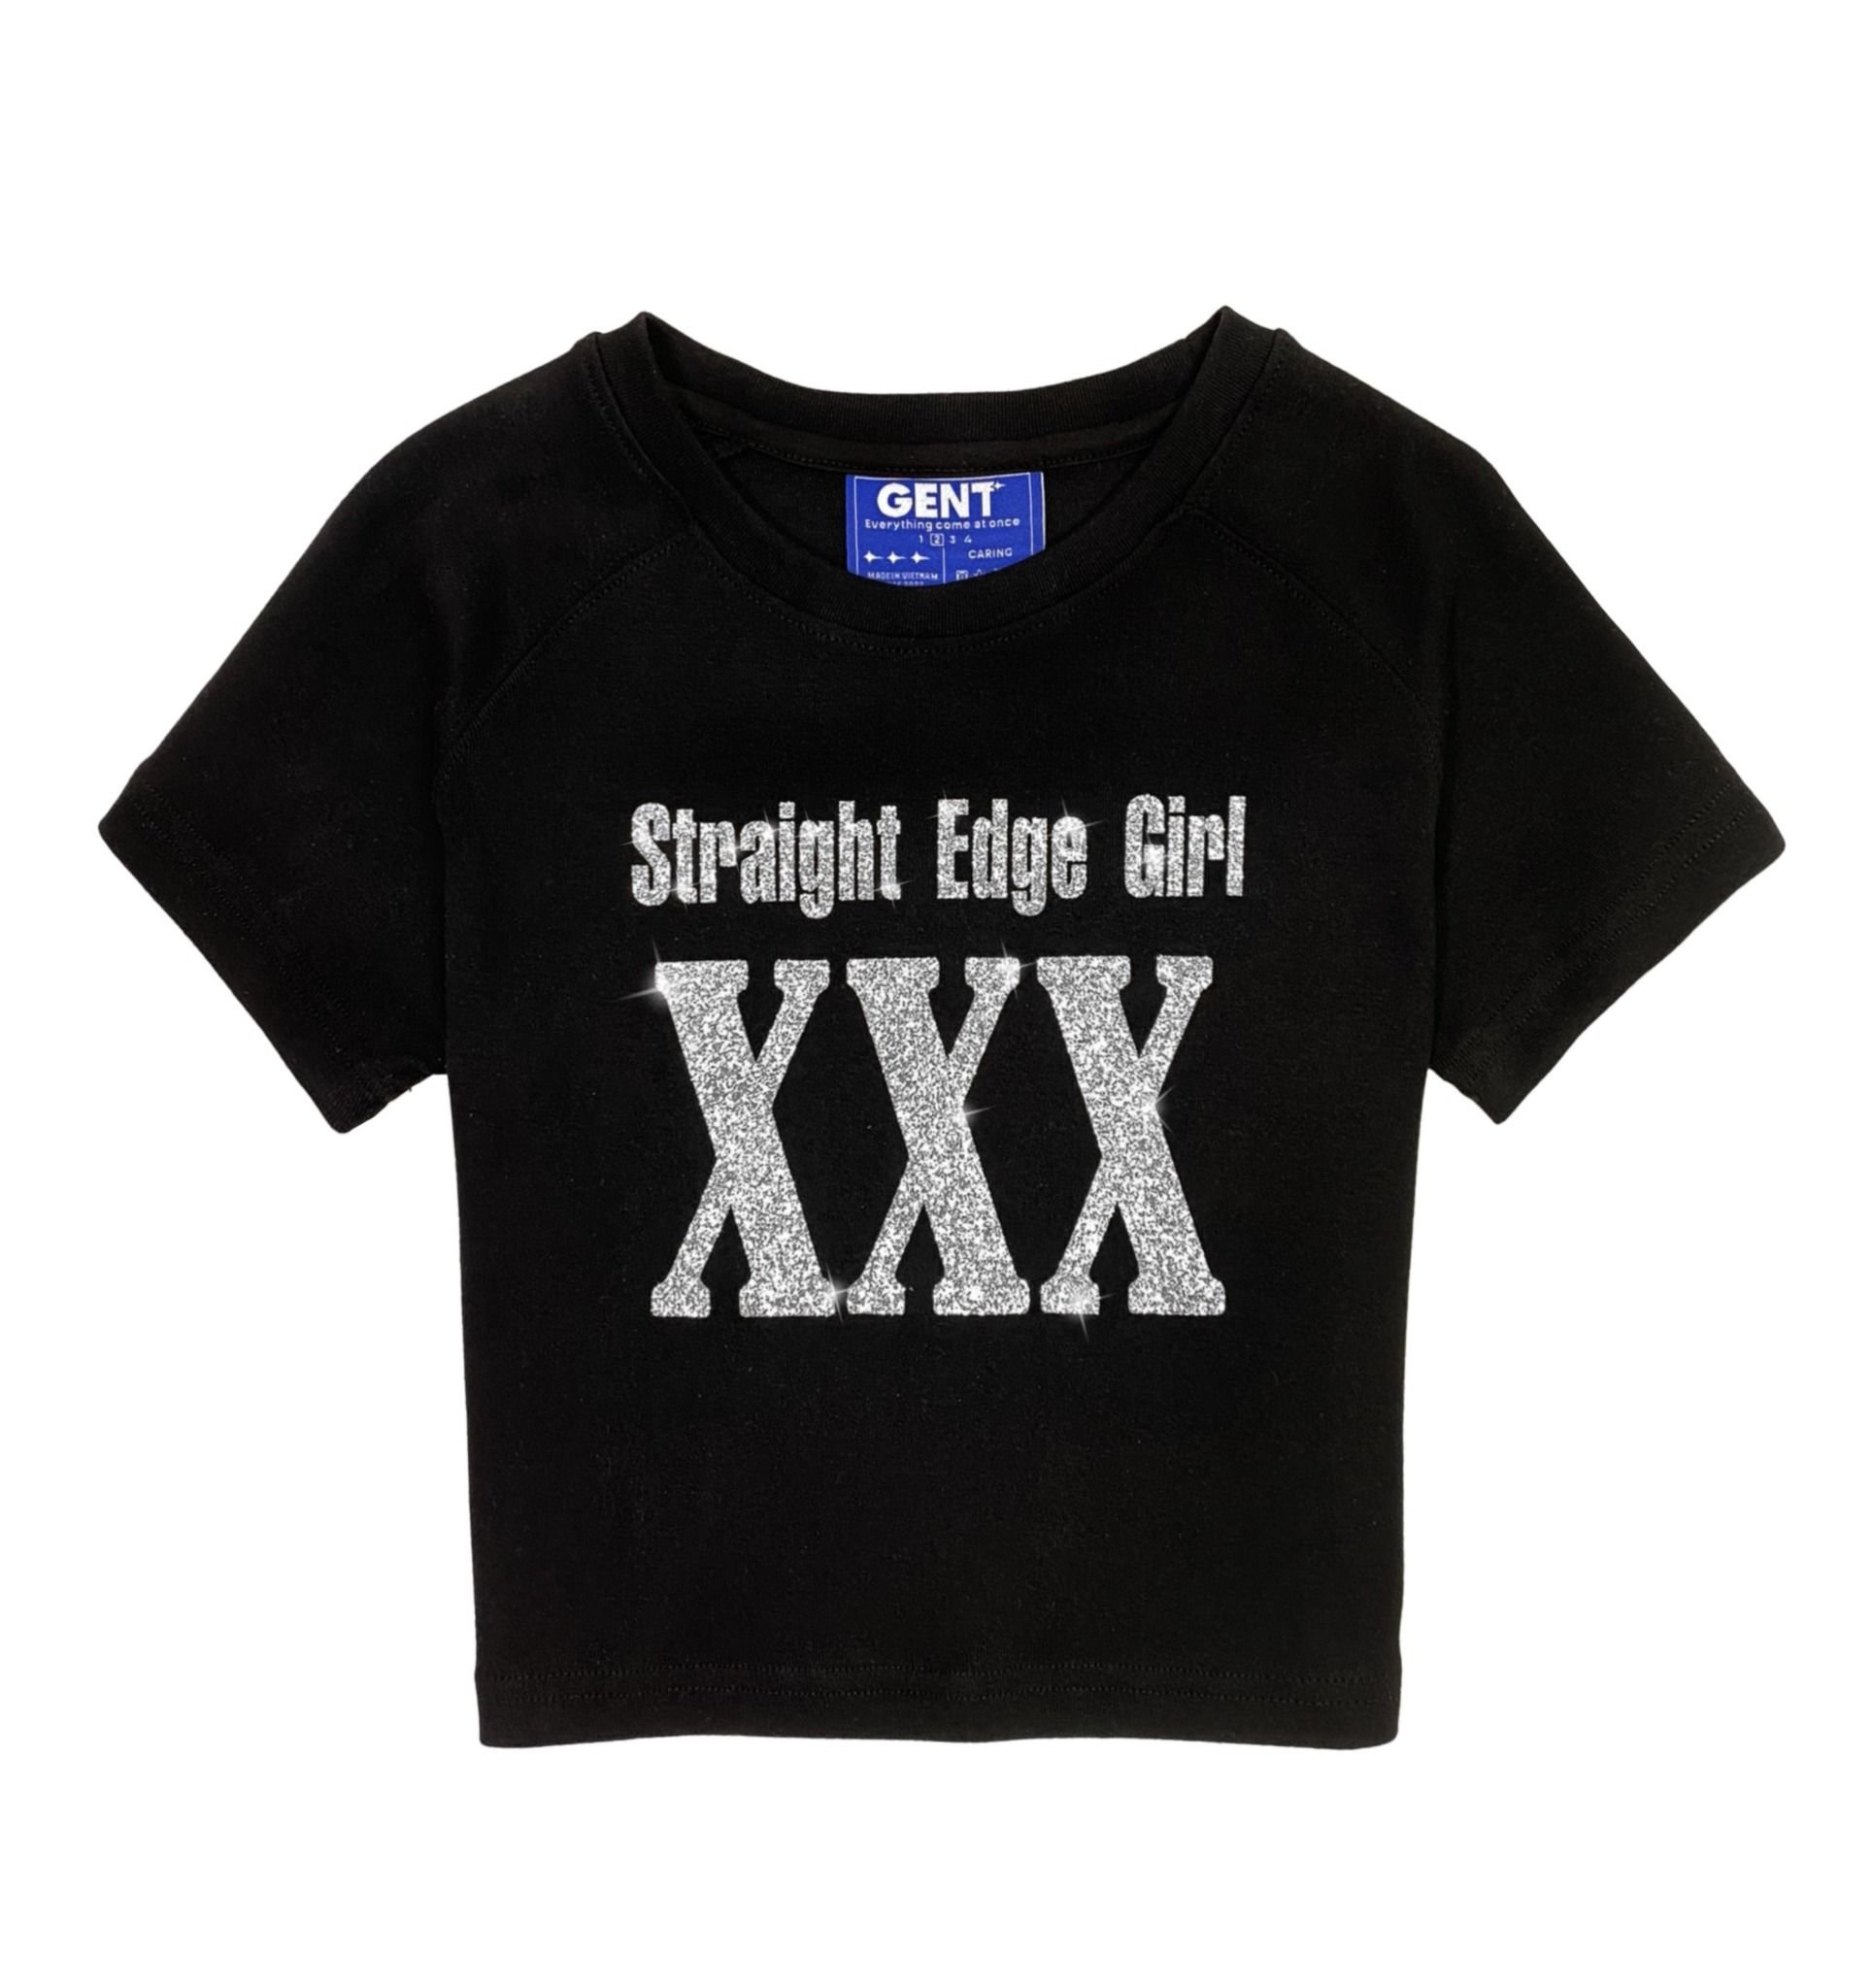 Áo Straight Edge Girl - XXX Croptop - GenT tay ôm ngắn kiểu dáng basic, thấm hút mồ hôi tốt, in hình kim tuyến.